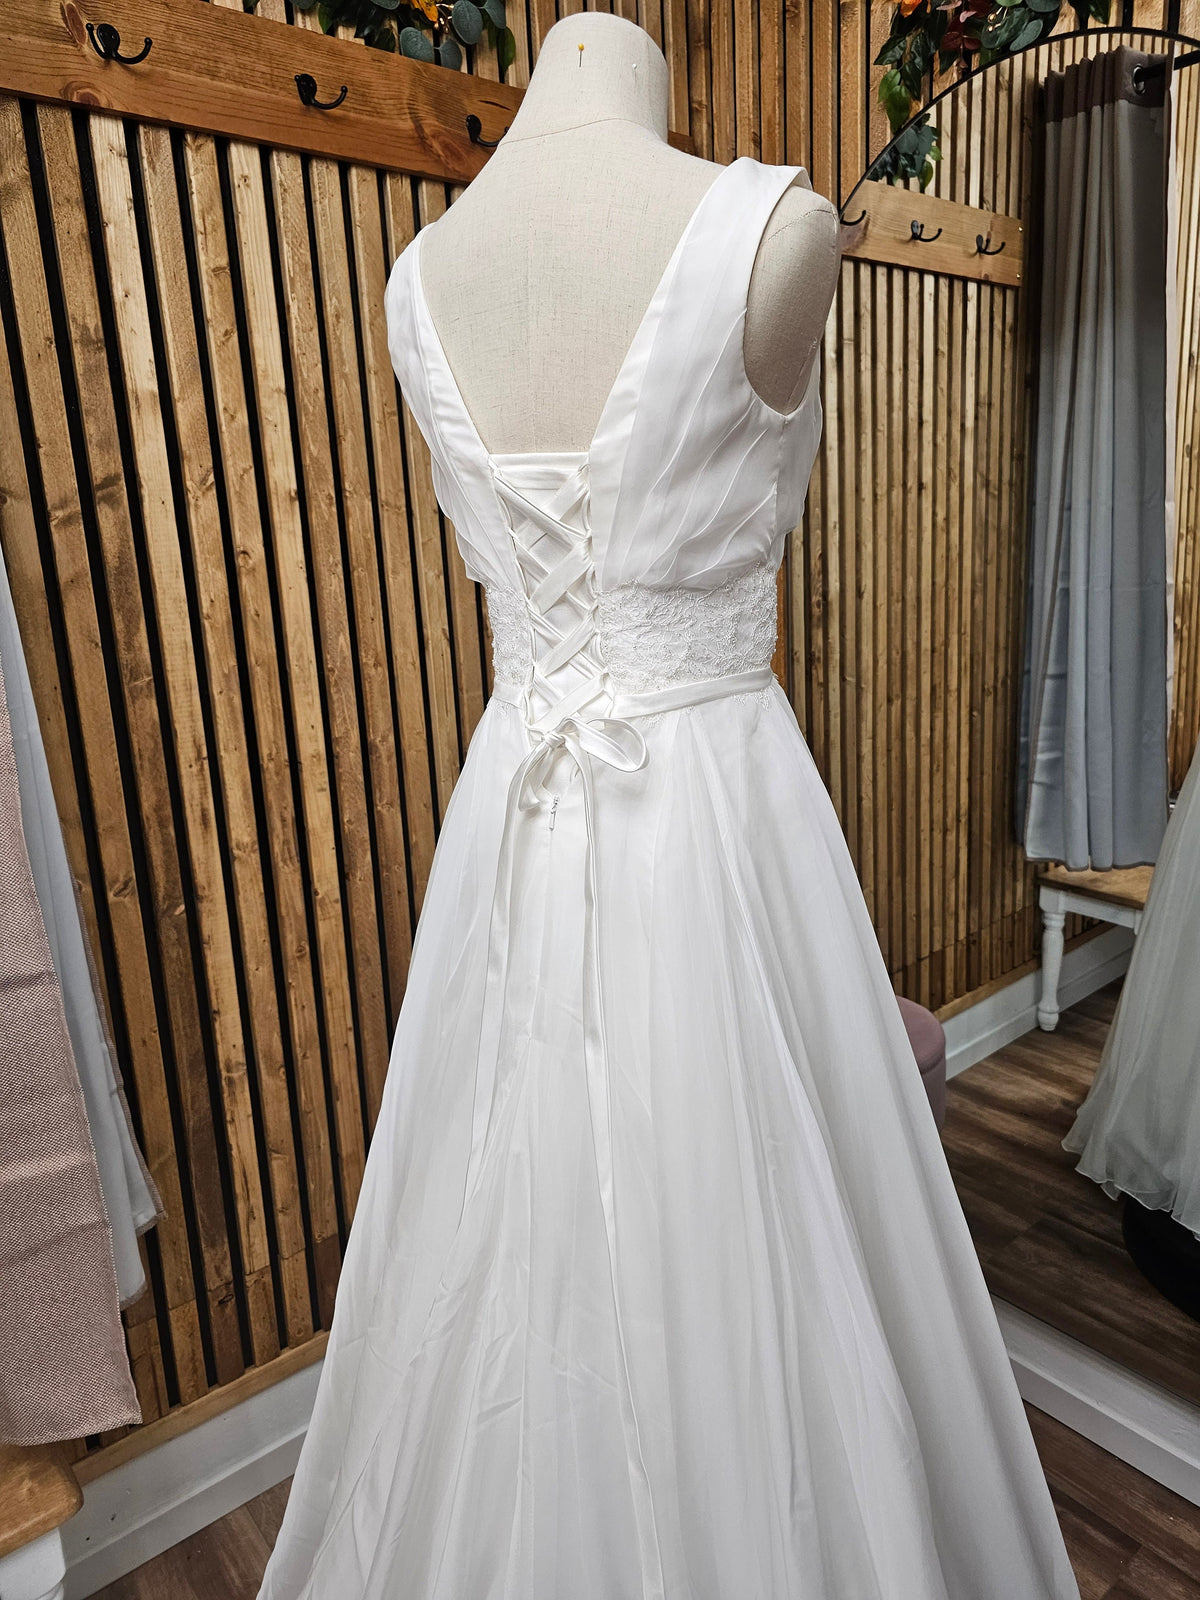 Classic Design V Neck Sleeveless Aline Wedding Dress Bridal Gown Short Train Elegant Style Open Back